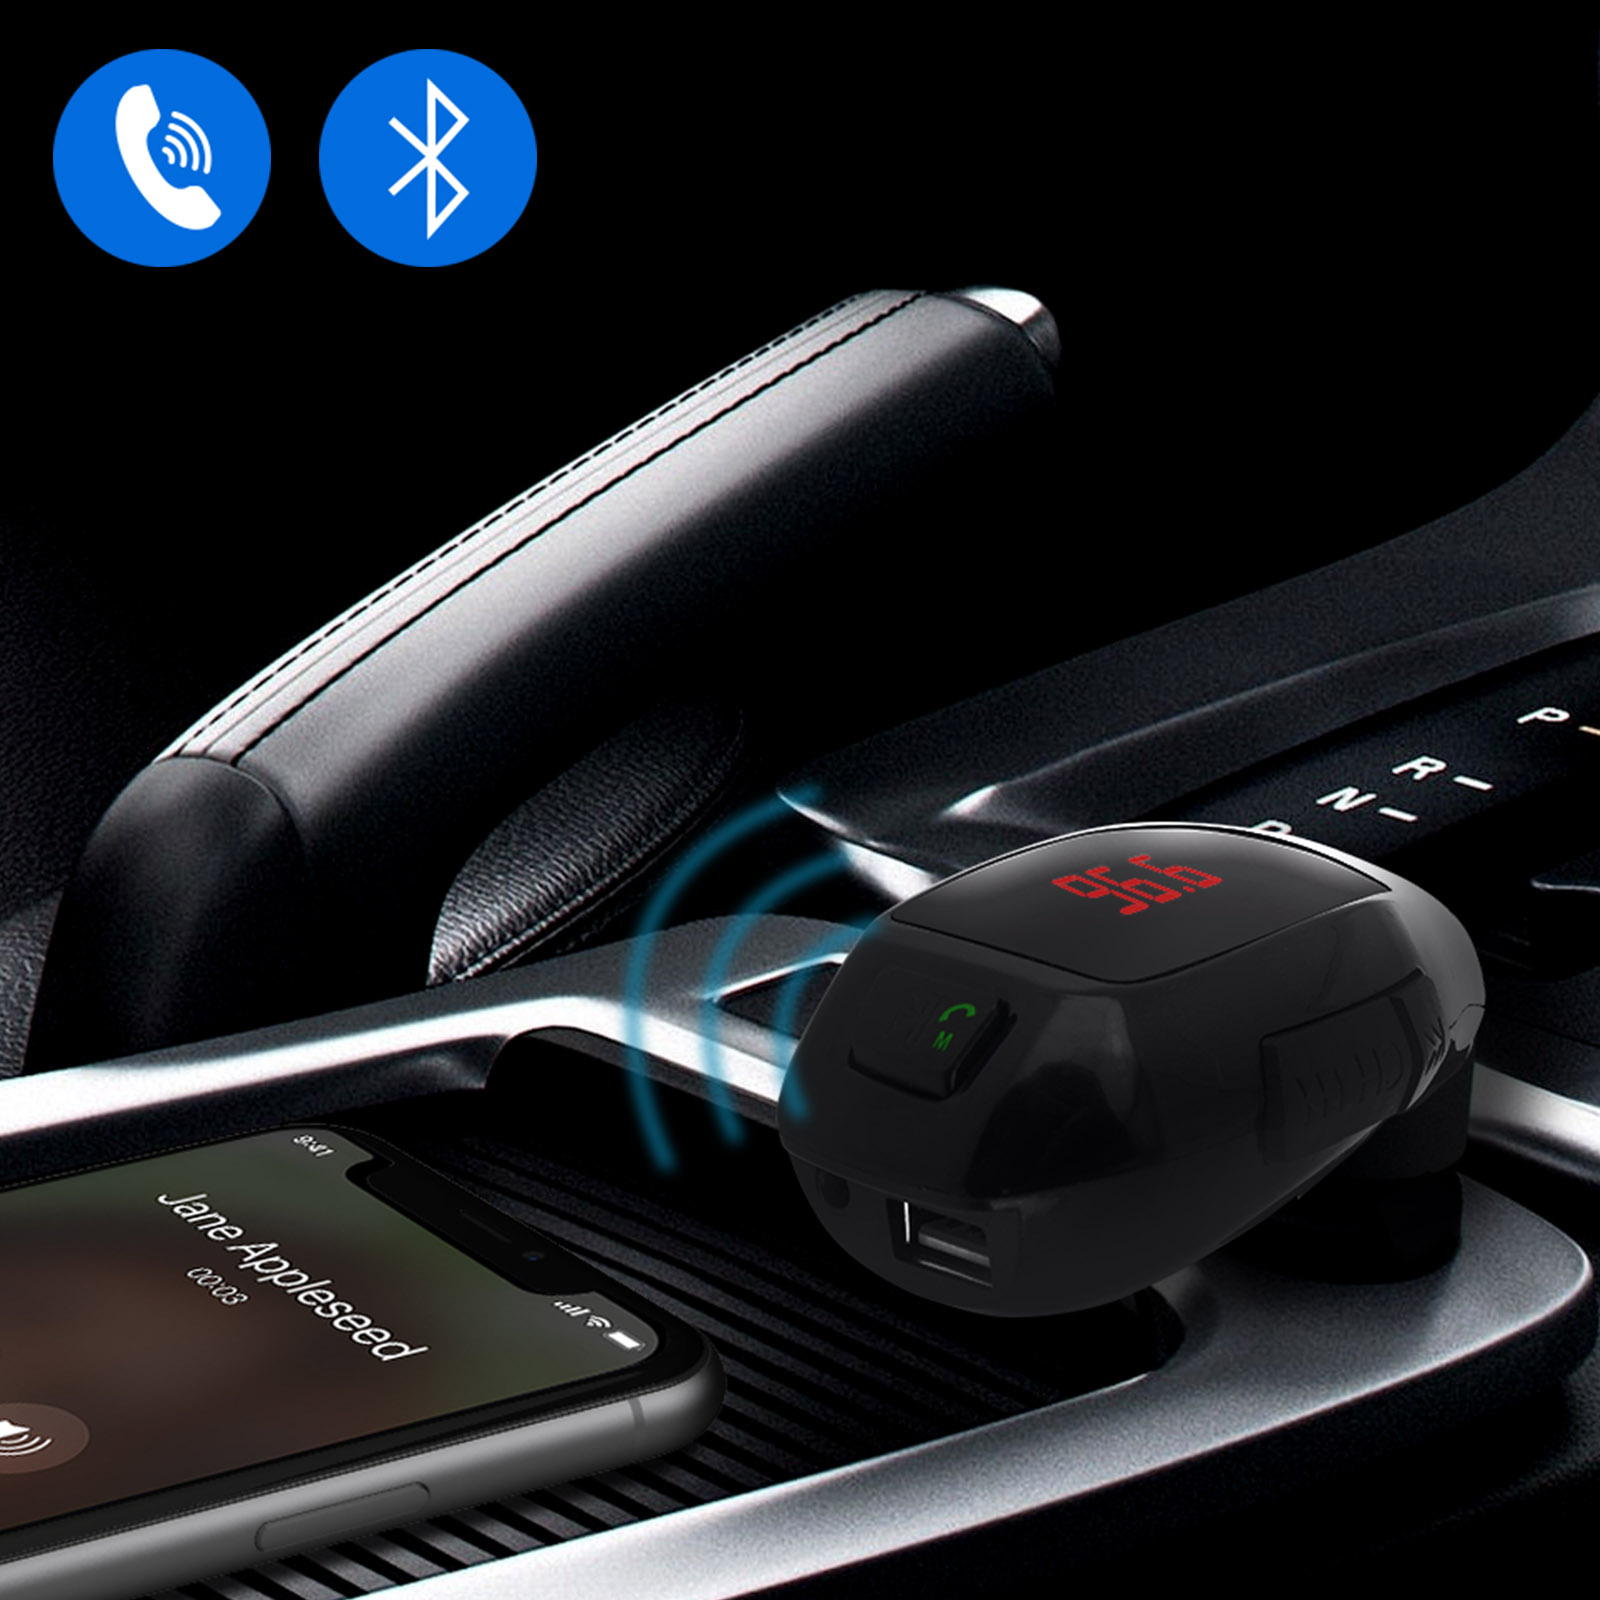 Manos libres Bluetooth CARS7 para coche con transmisor FM